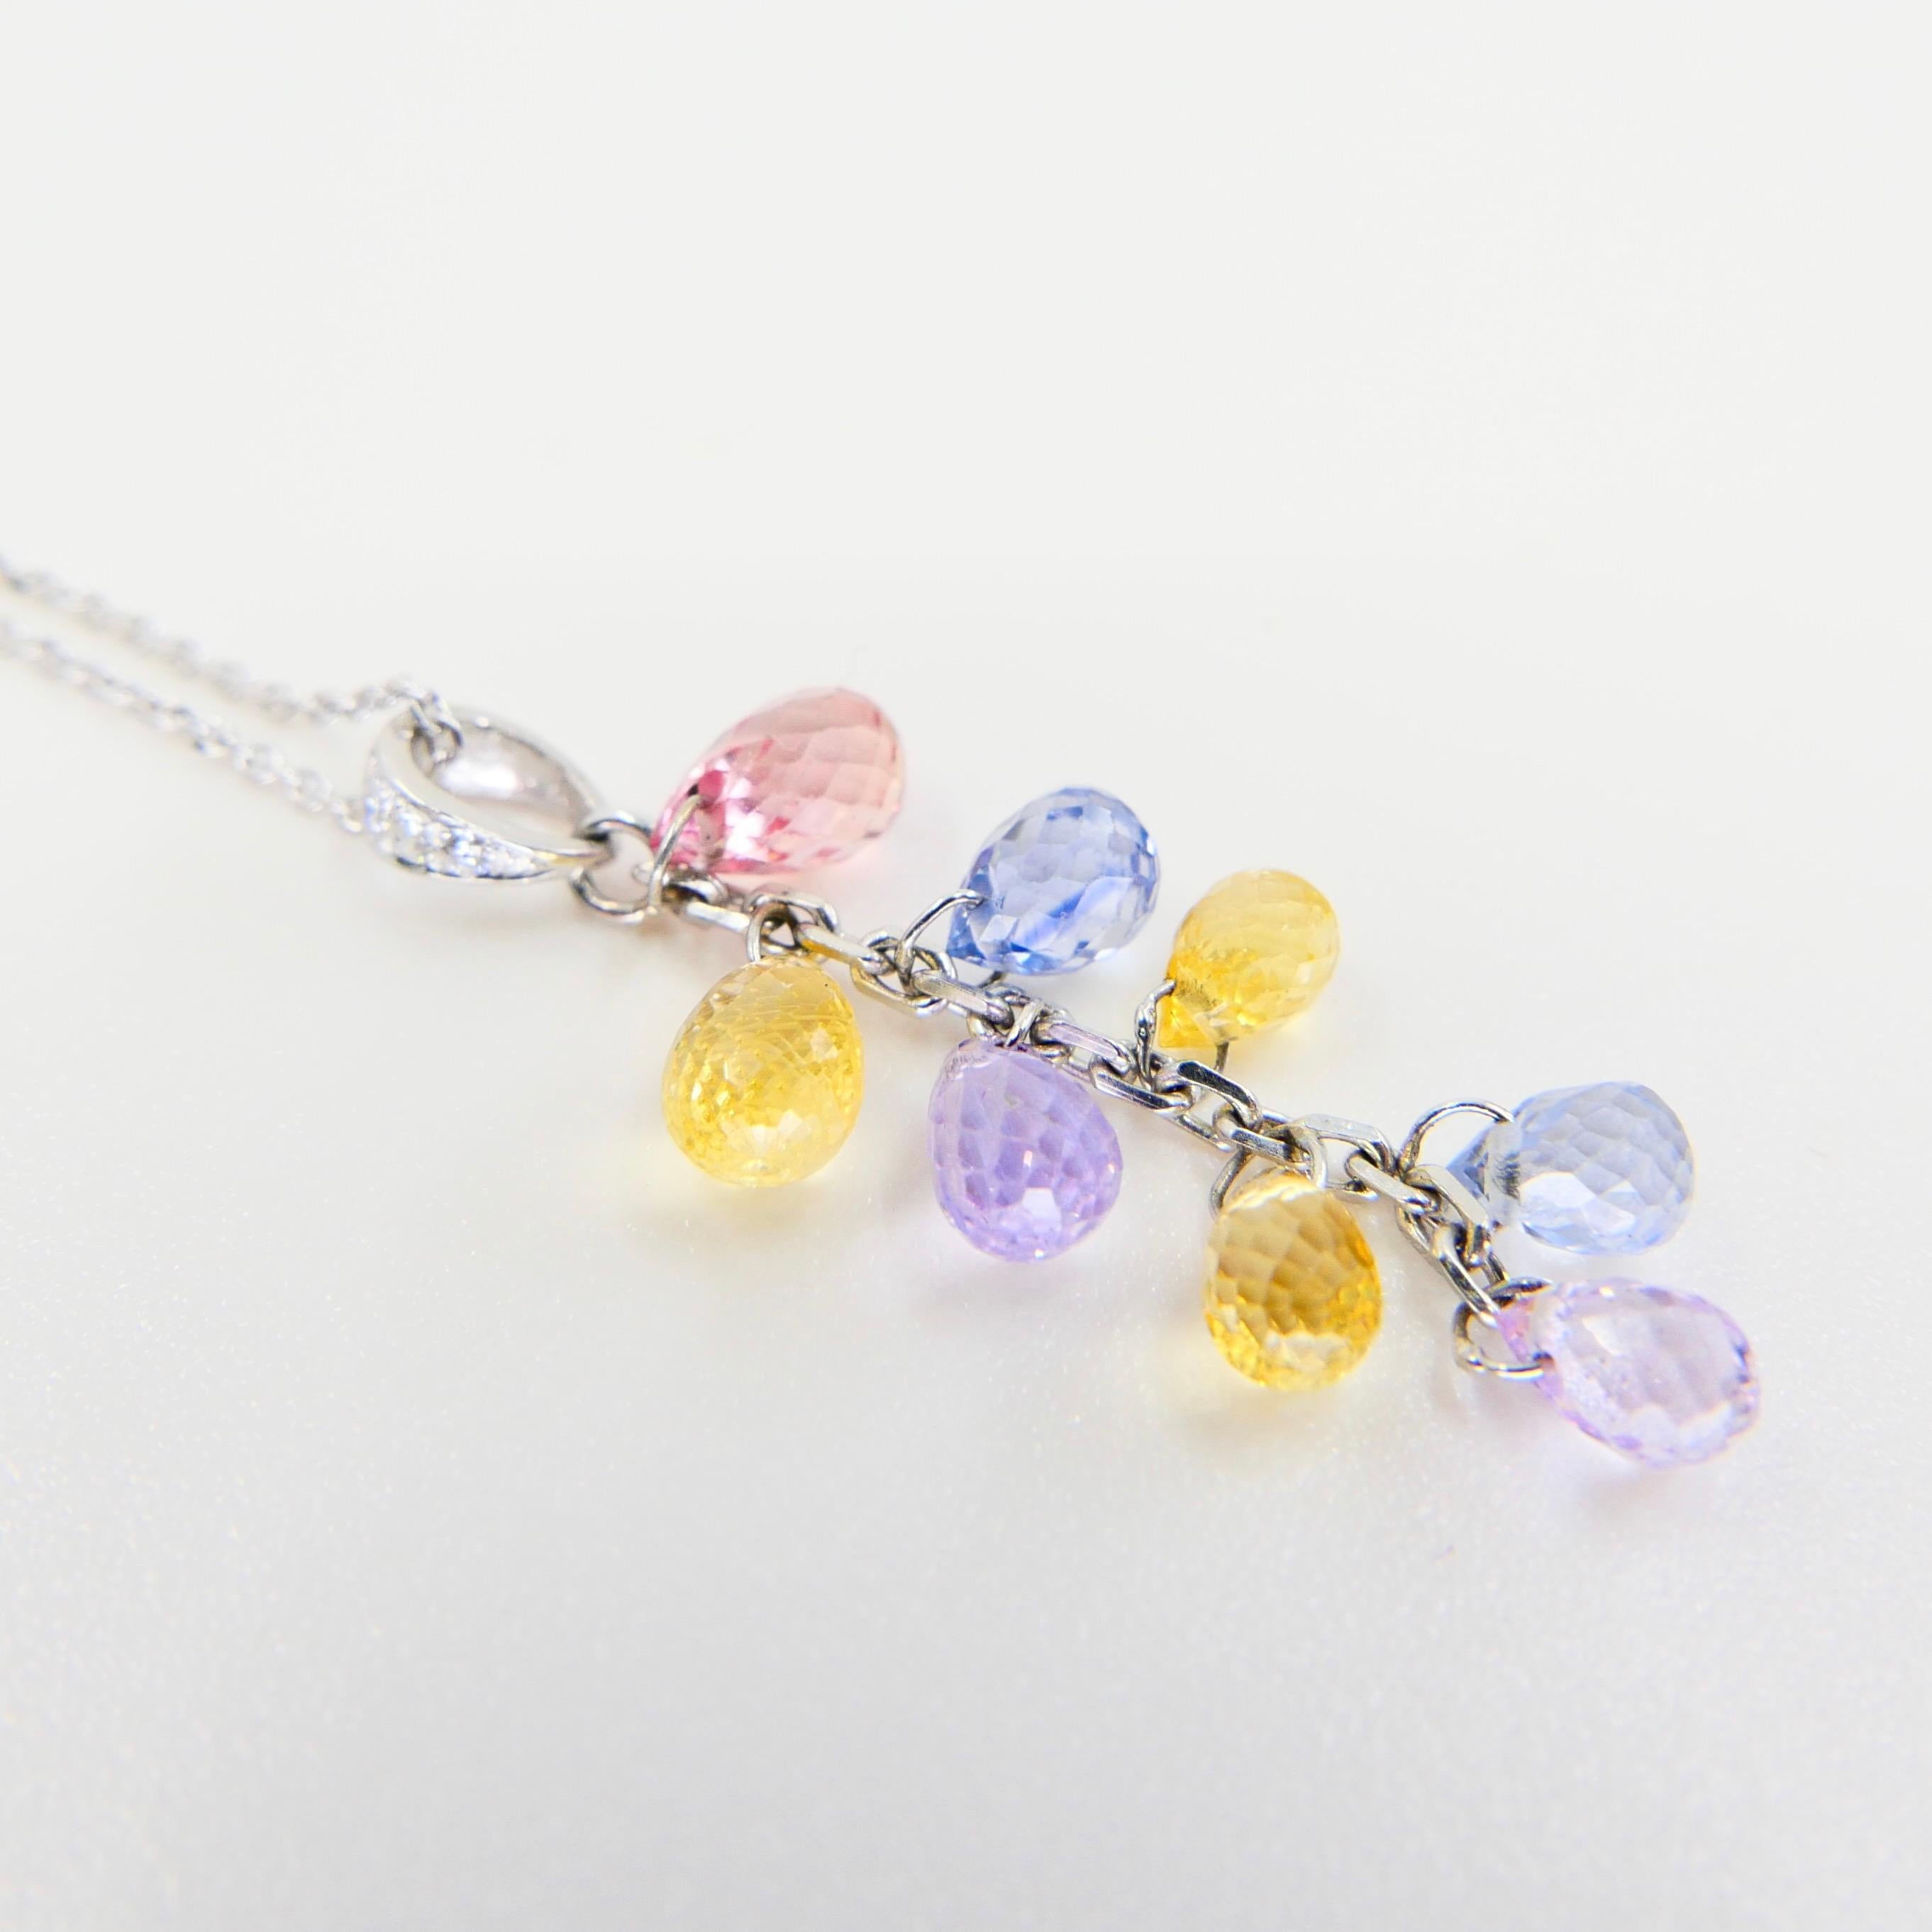 Muti Colored Briolette Cut Sapphires & Diamond Pendant Drop Necklace For Sale 3